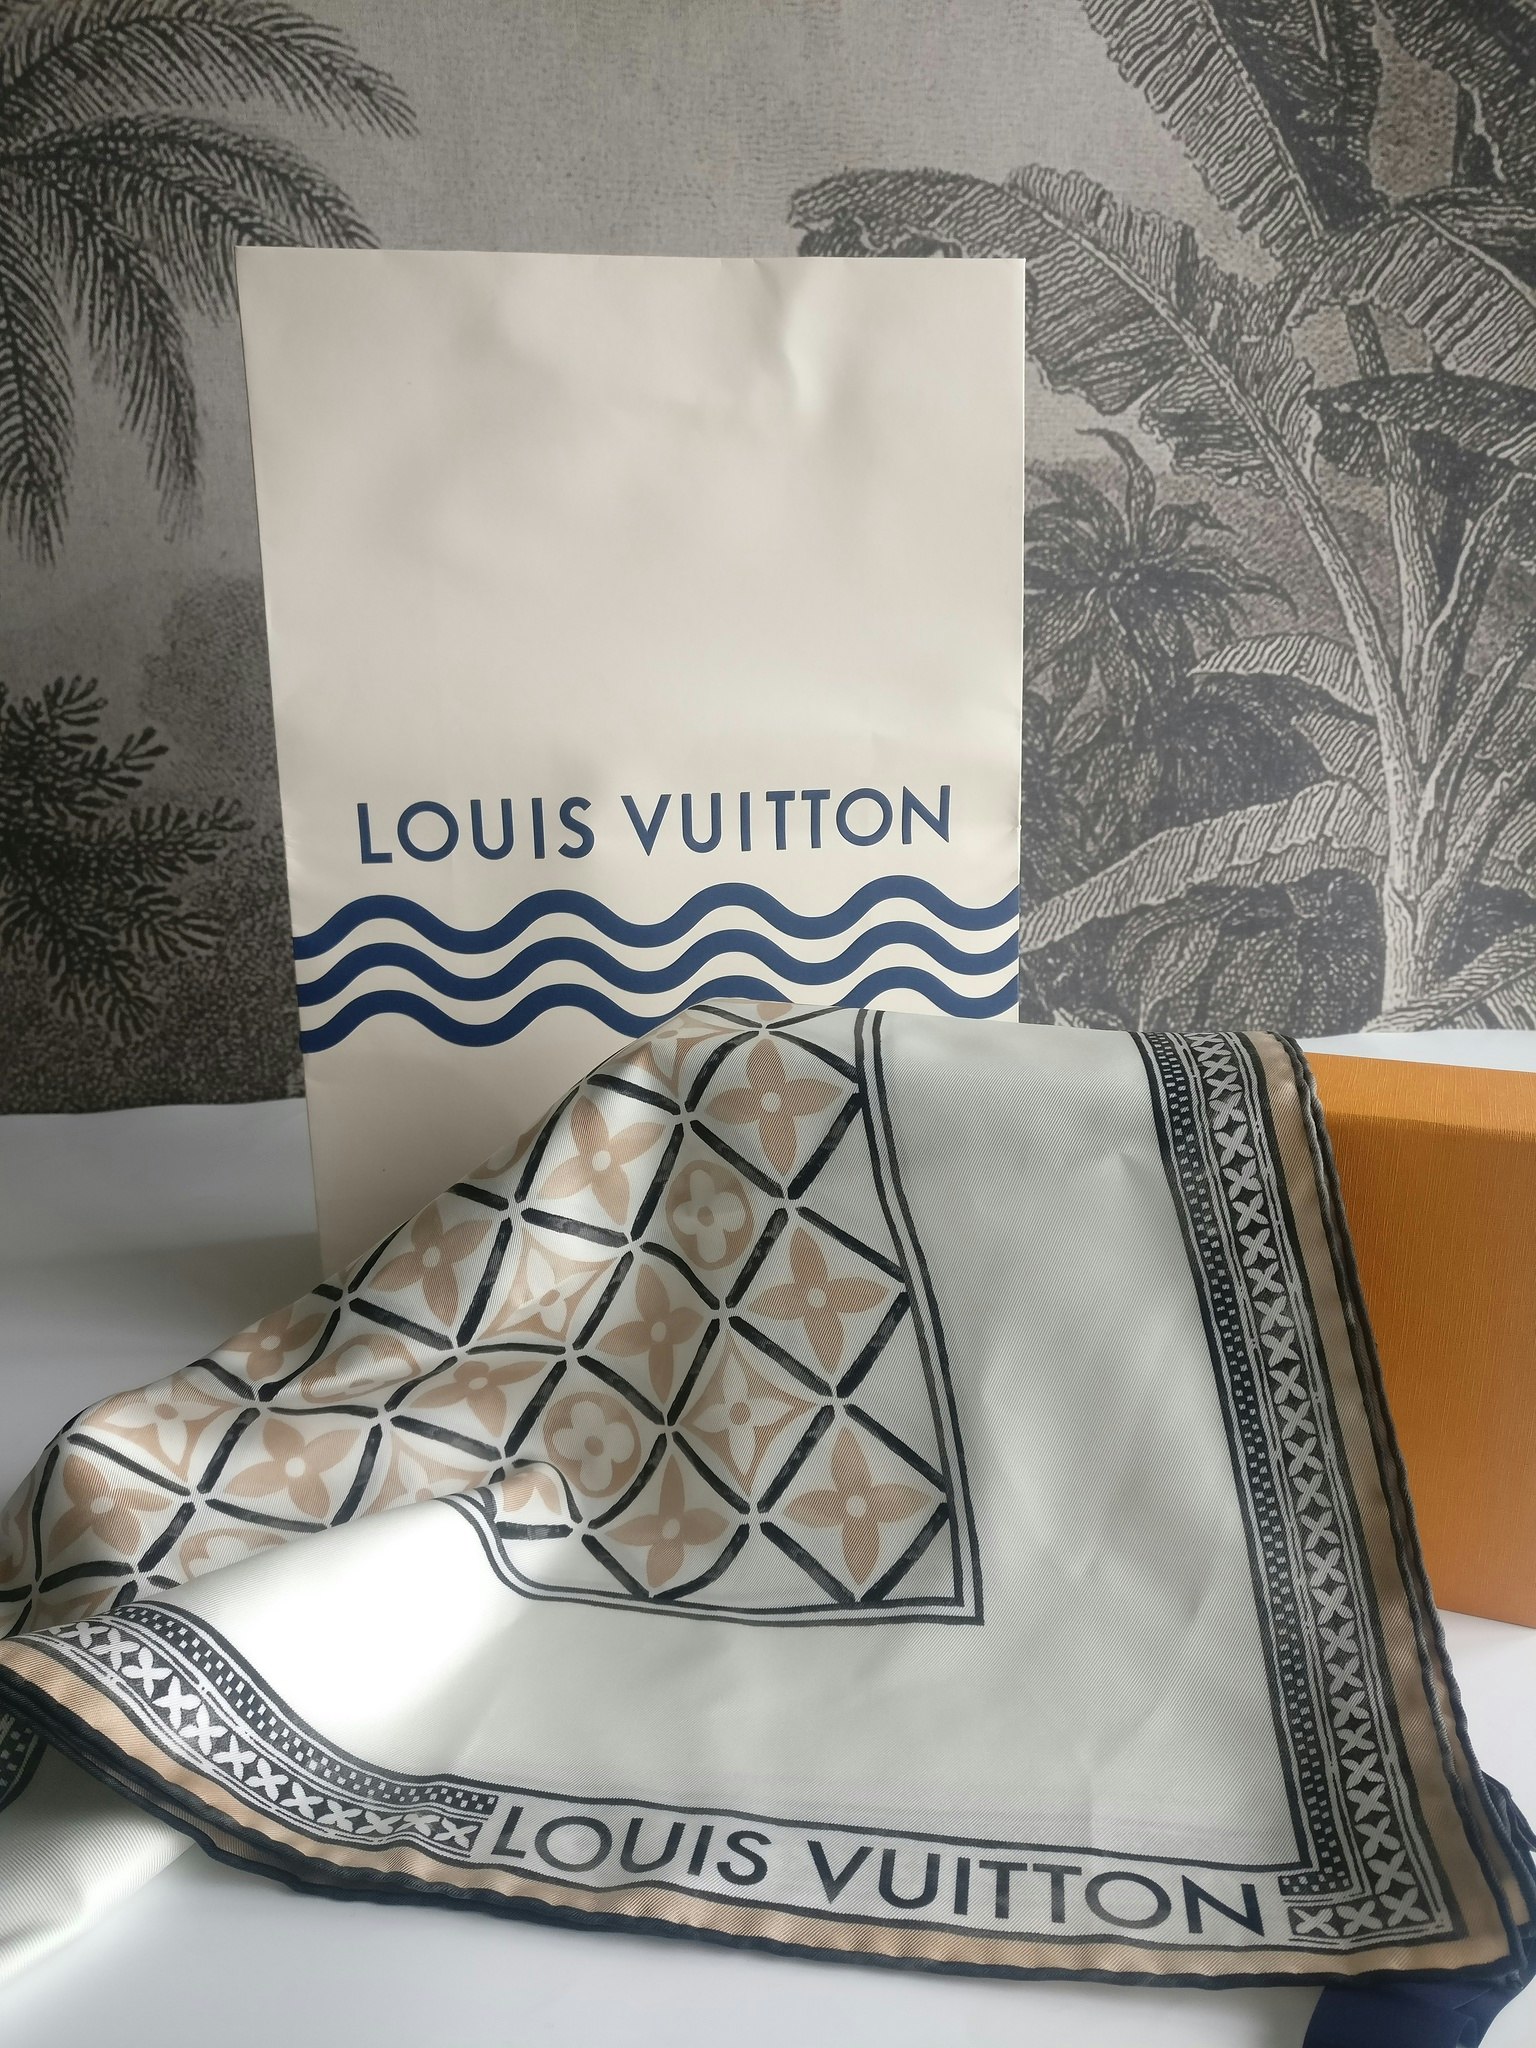 Louis Vuitton Monogram Flower Tile Square 90 Blue Silk